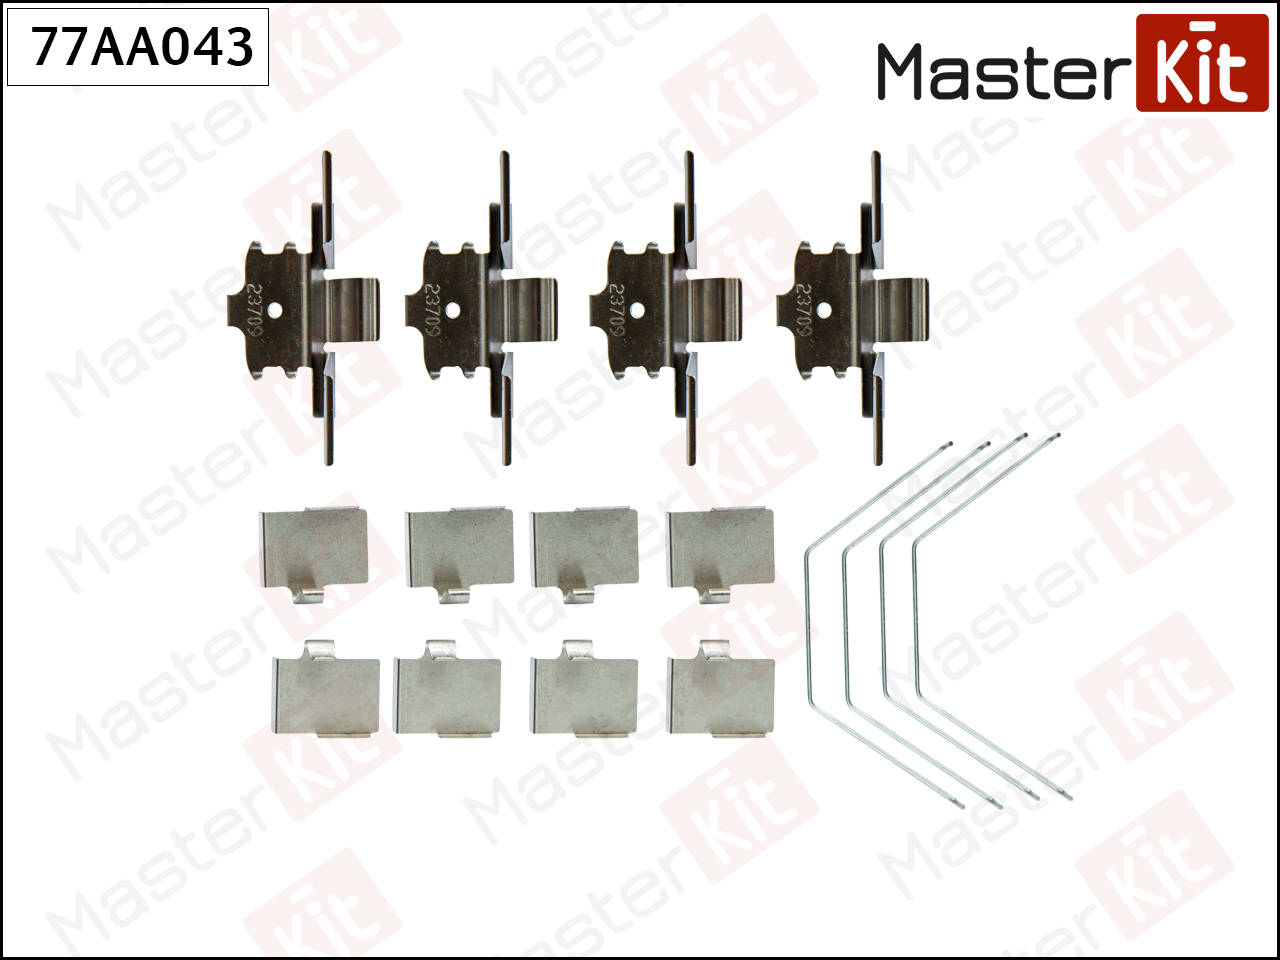 Ремкомплект крепления тормозных колодок - Master KiT 77AA043